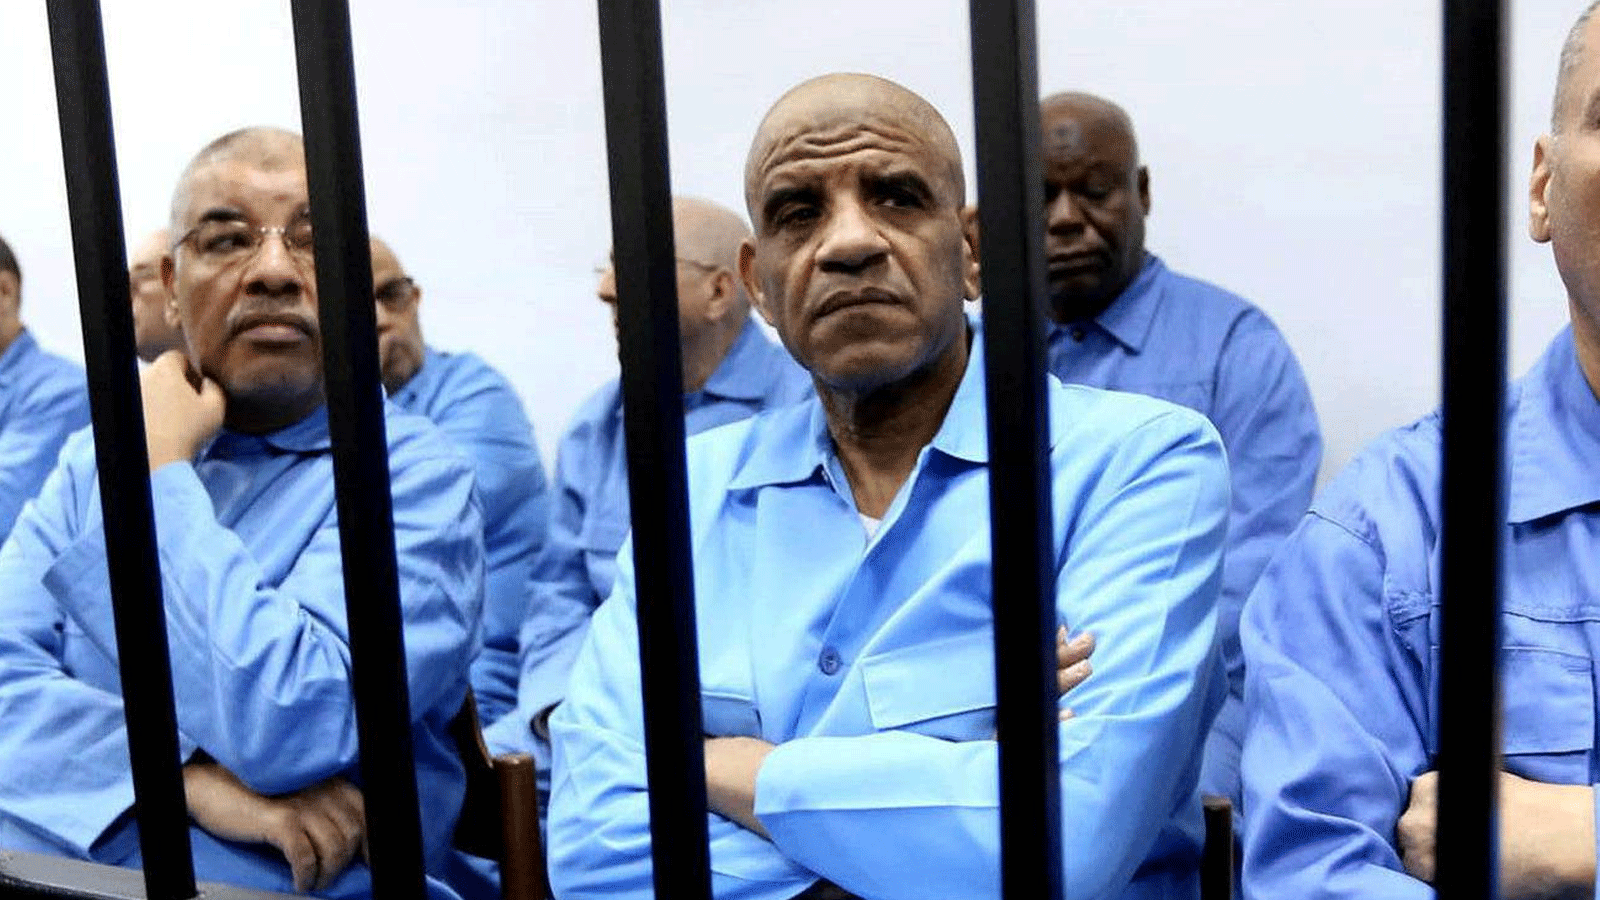  الولايات المتحدة وجهت الاتهام لأبو عجيلة محمد مسعود قبل عامين على خلفية قضية لوكربي